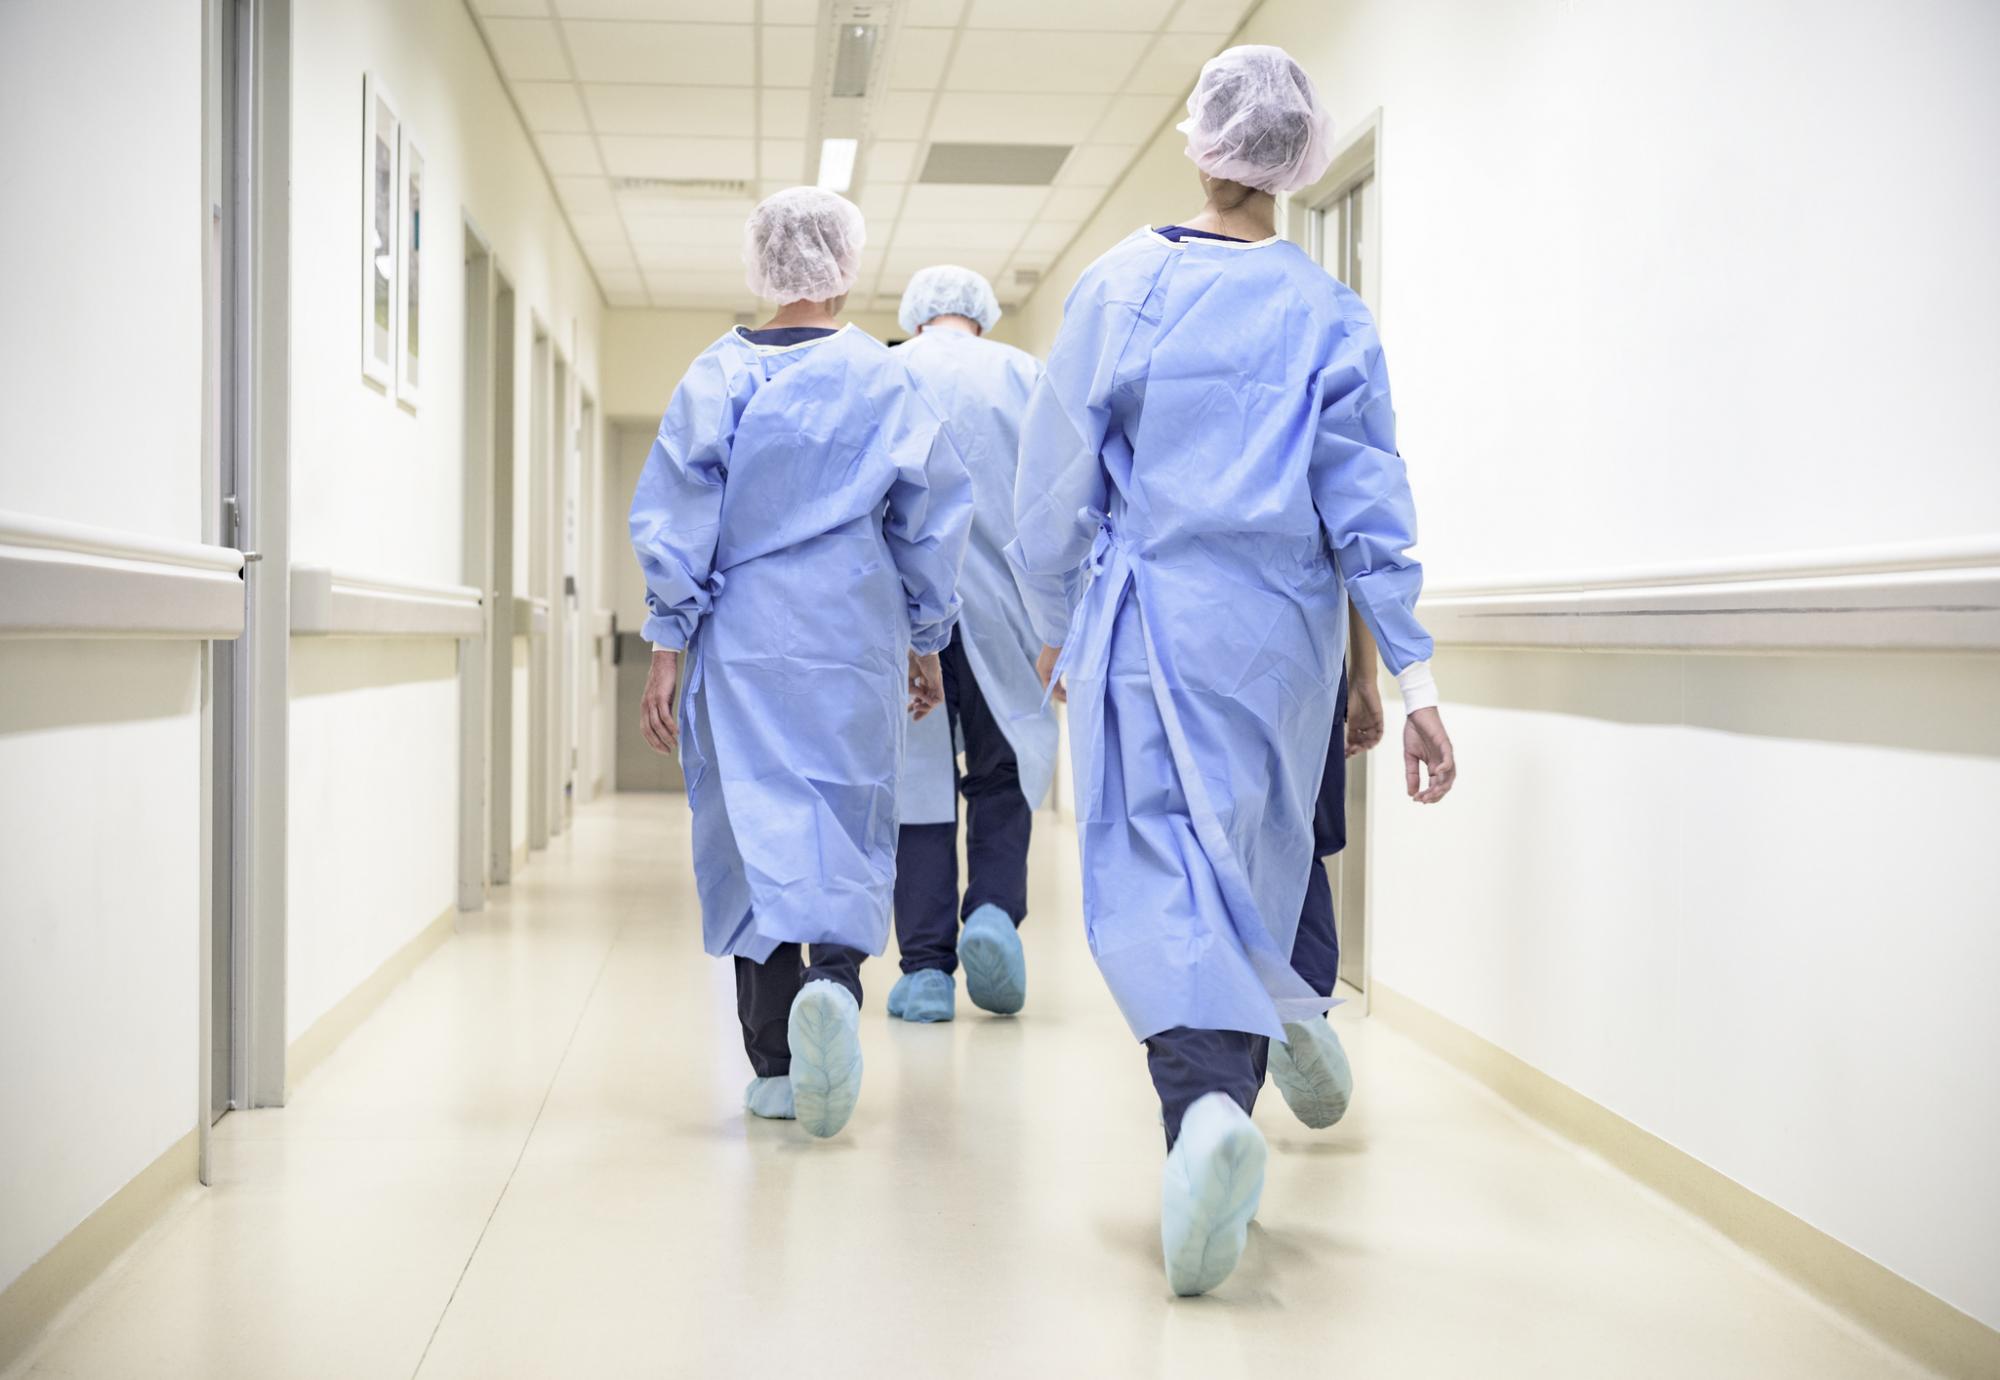 Nurses walking in a ward